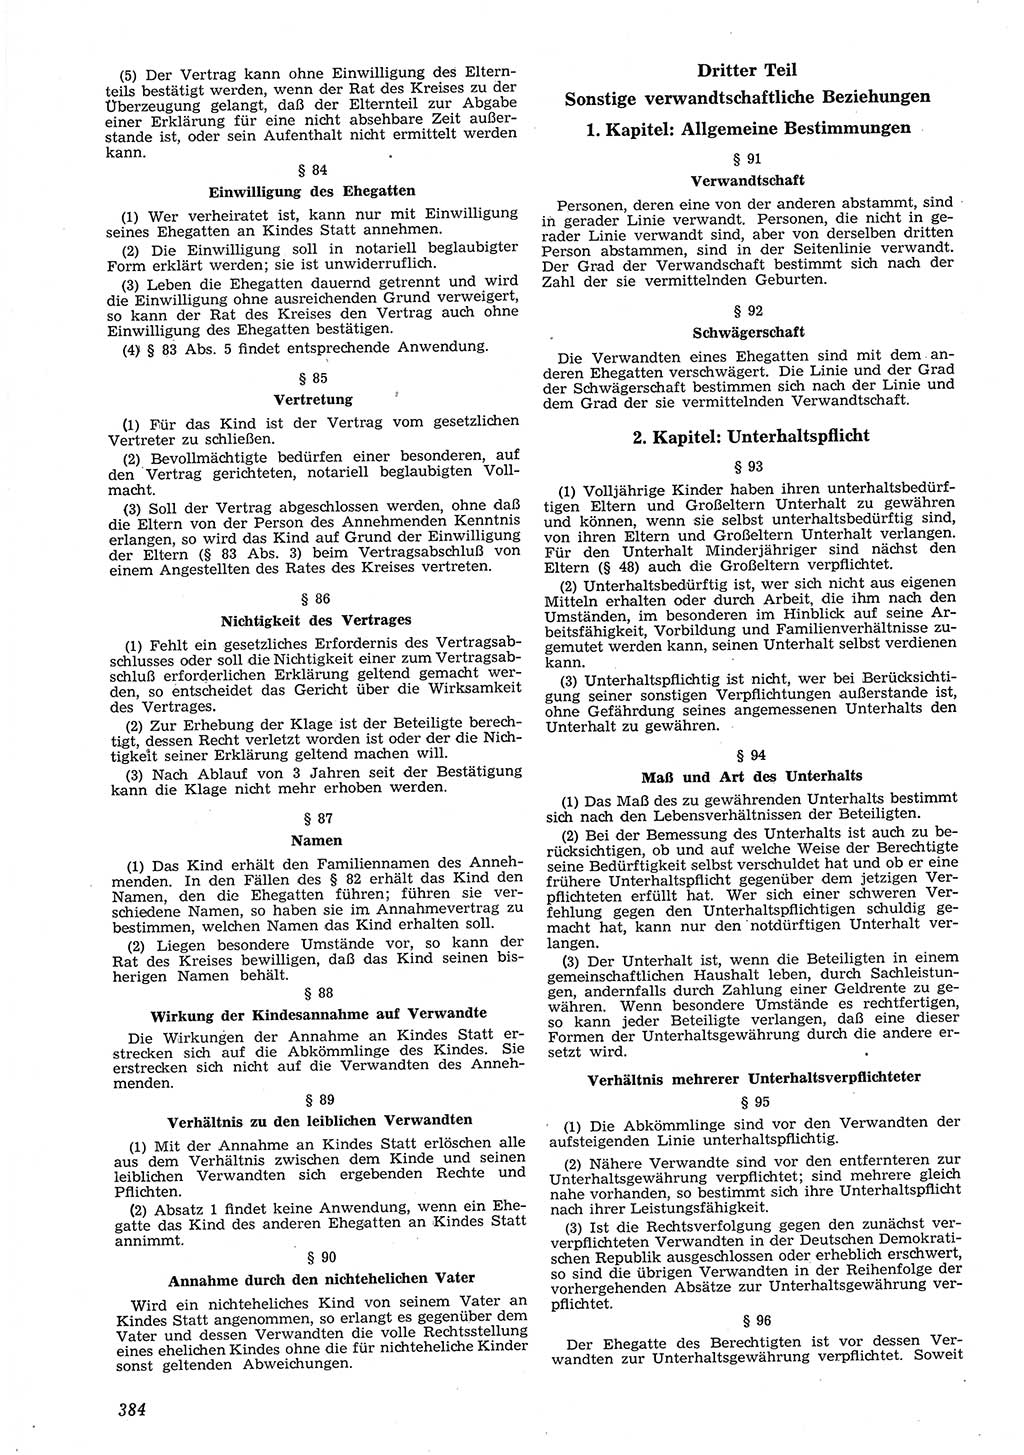 Neue Justiz (NJ), Zeitschrift für Recht und Rechtswissenschaft [Deutsche Demokratische Republik (DDR)], 8. Jahrgang 1954, Seite 384 (NJ DDR 1954, S. 384)